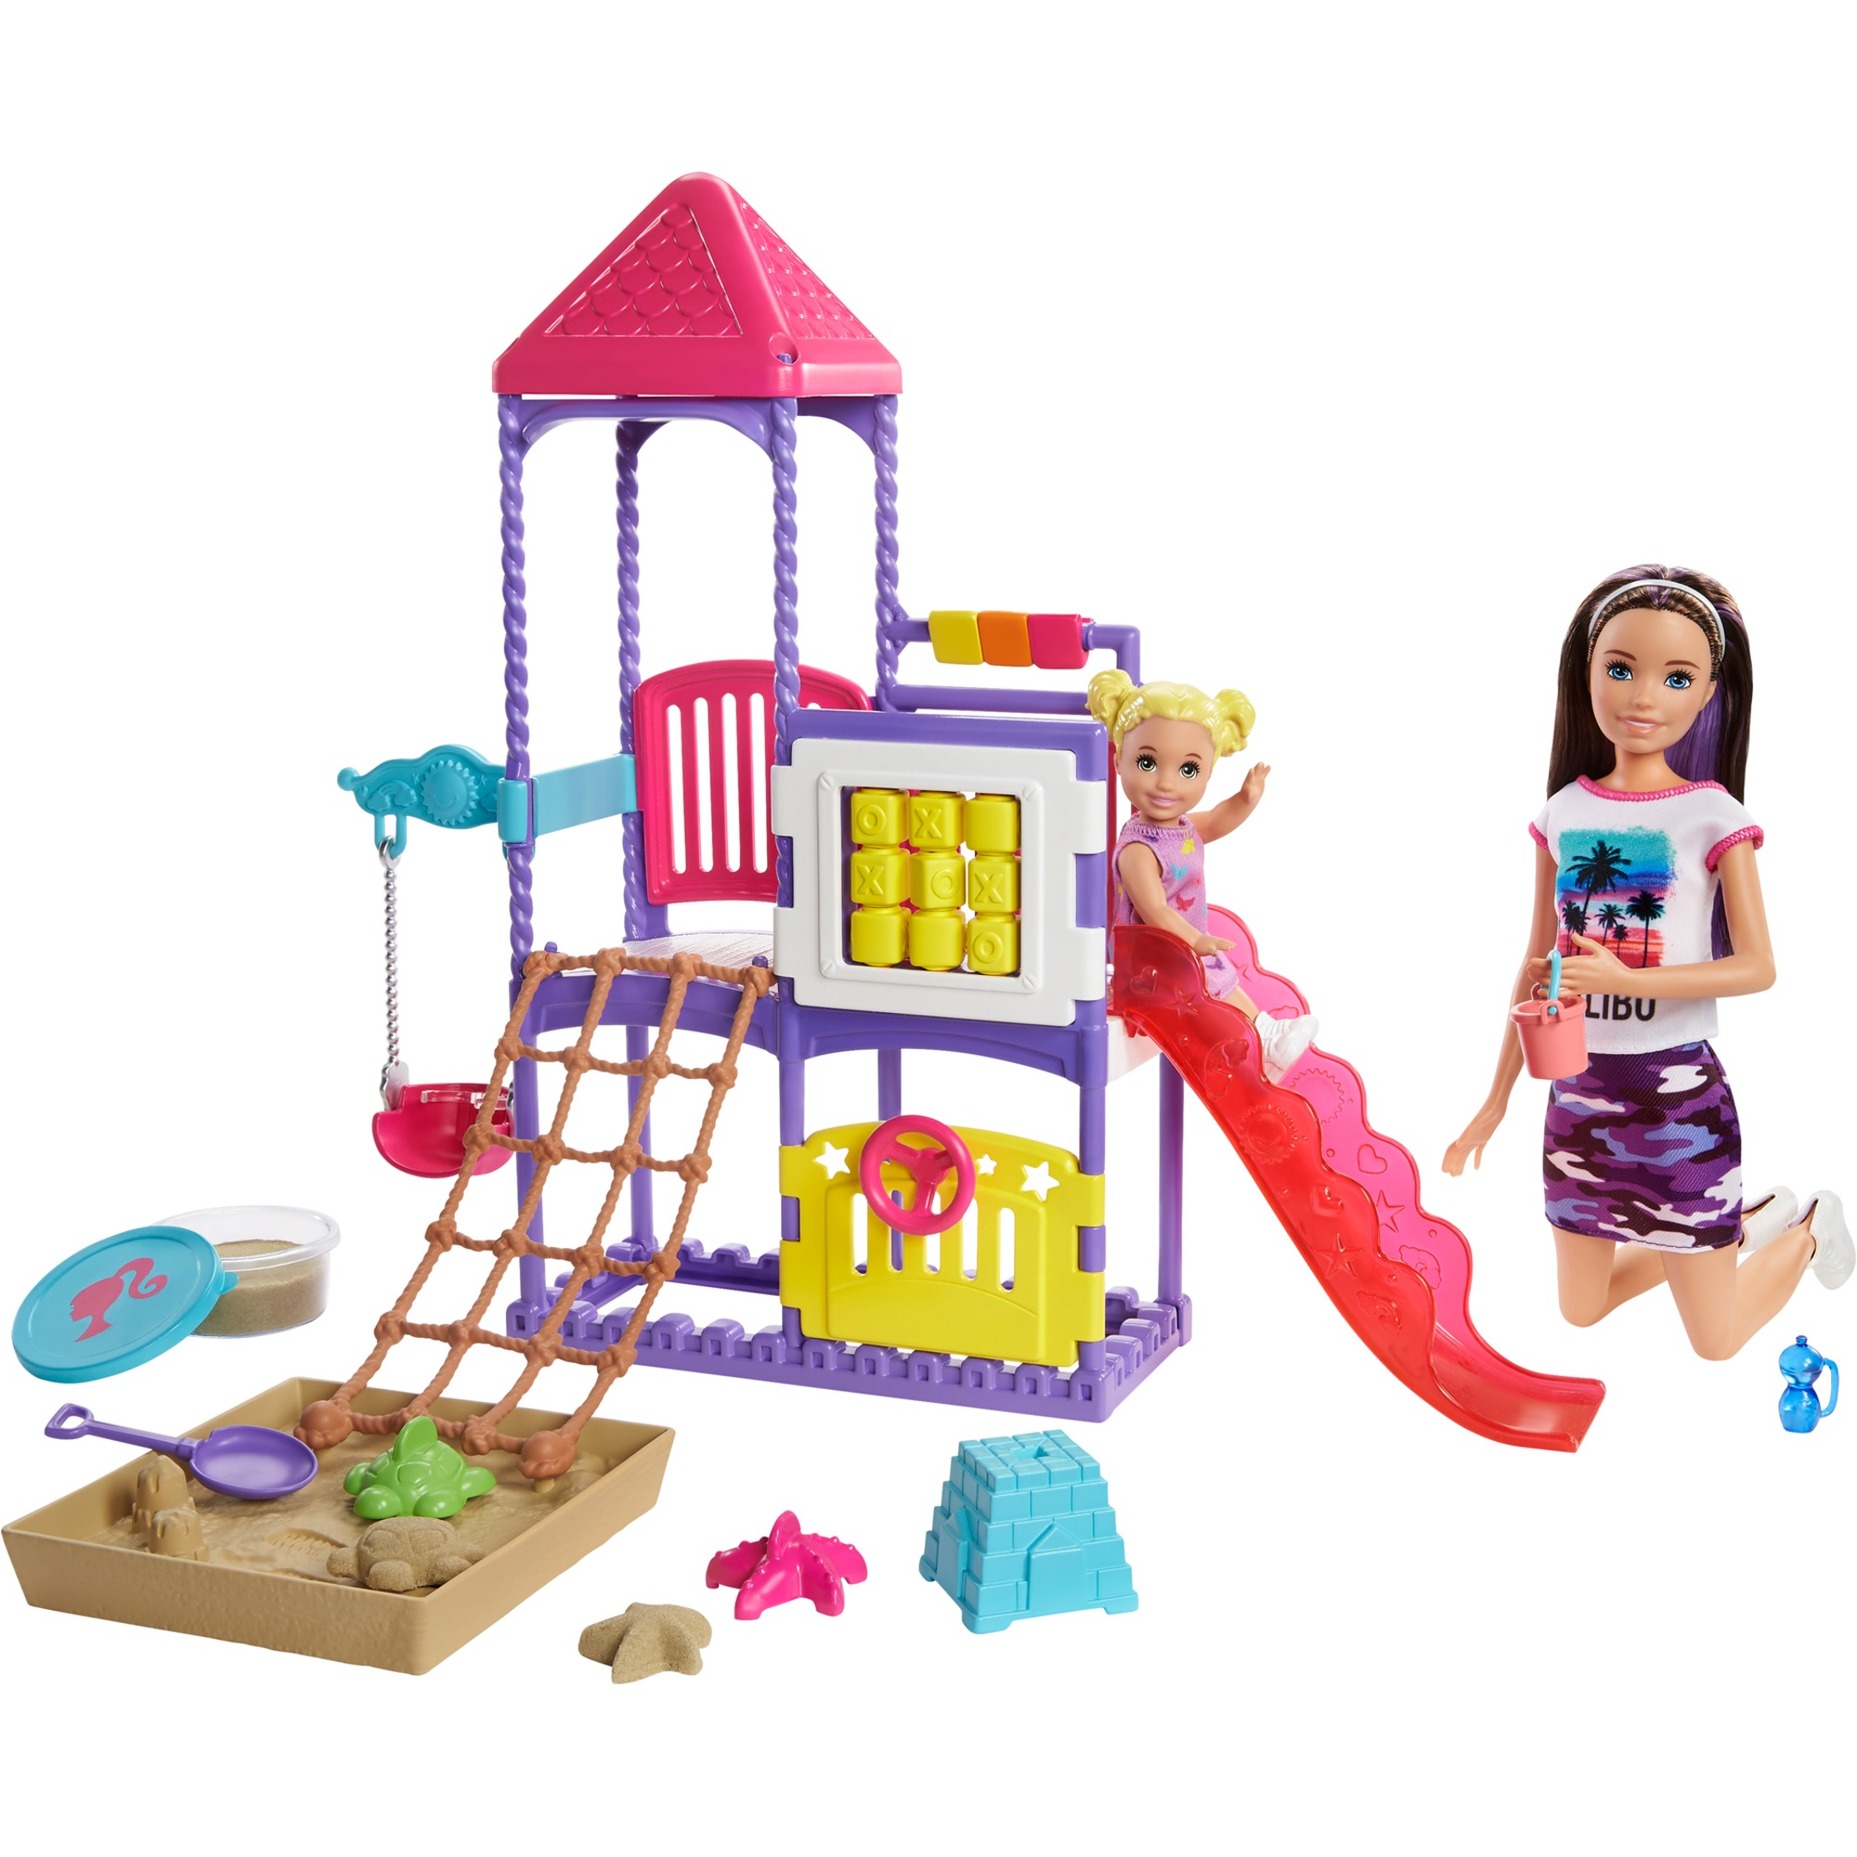 Image of Alternate - Barbie "Skipper Babysitters Inc." Puppen und Spielplatz Spielset online einkaufen bei Alternate